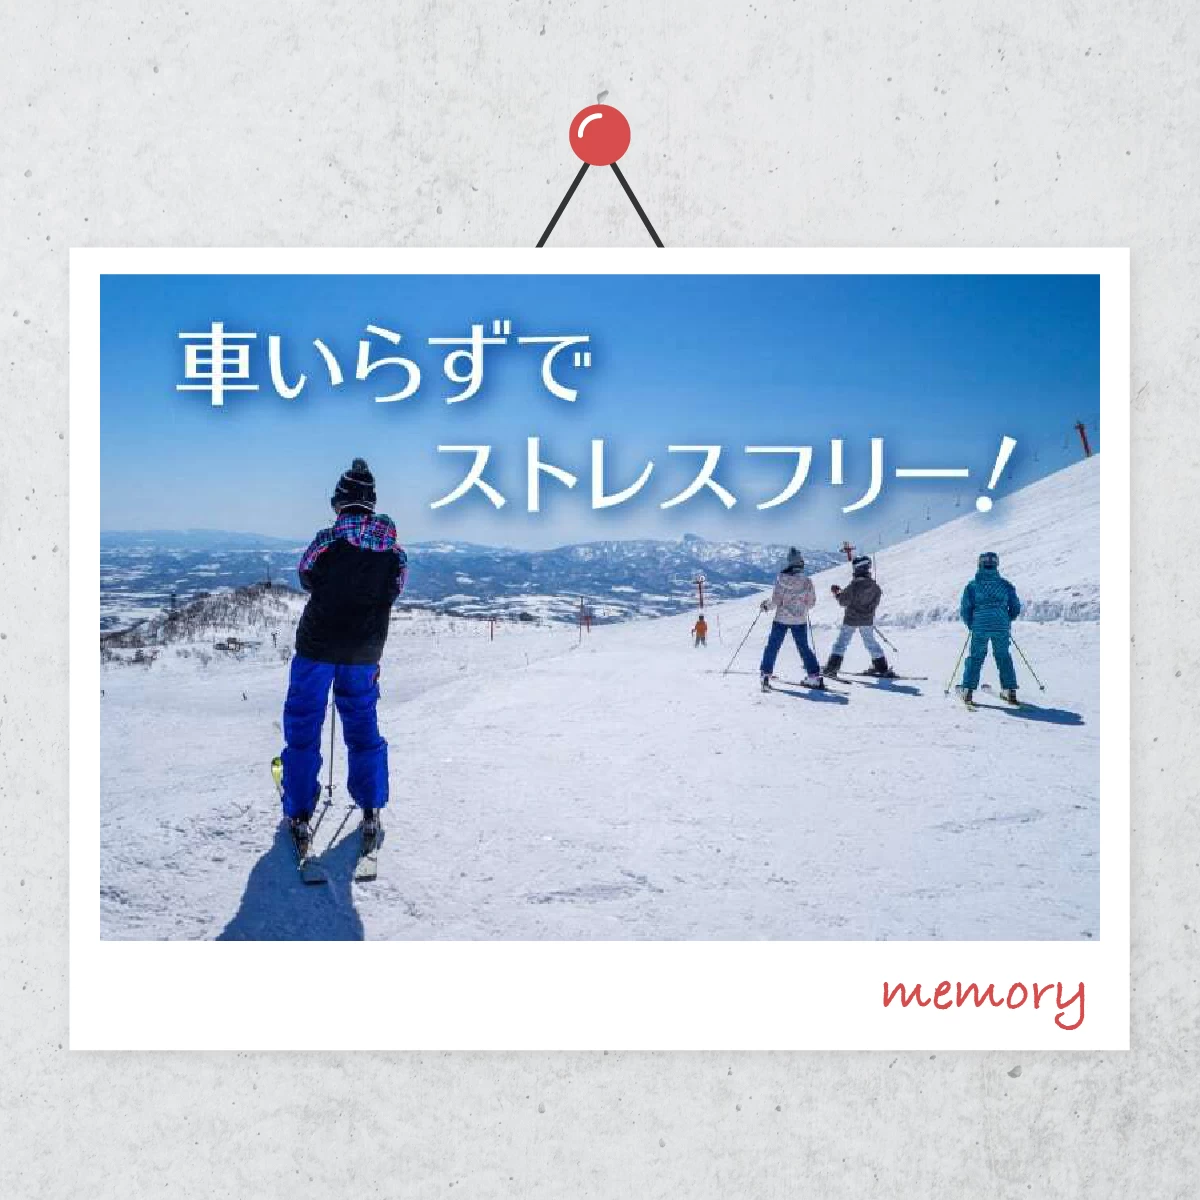 冬の北海道・ニセコへ  友達と楽しむスキー旅行